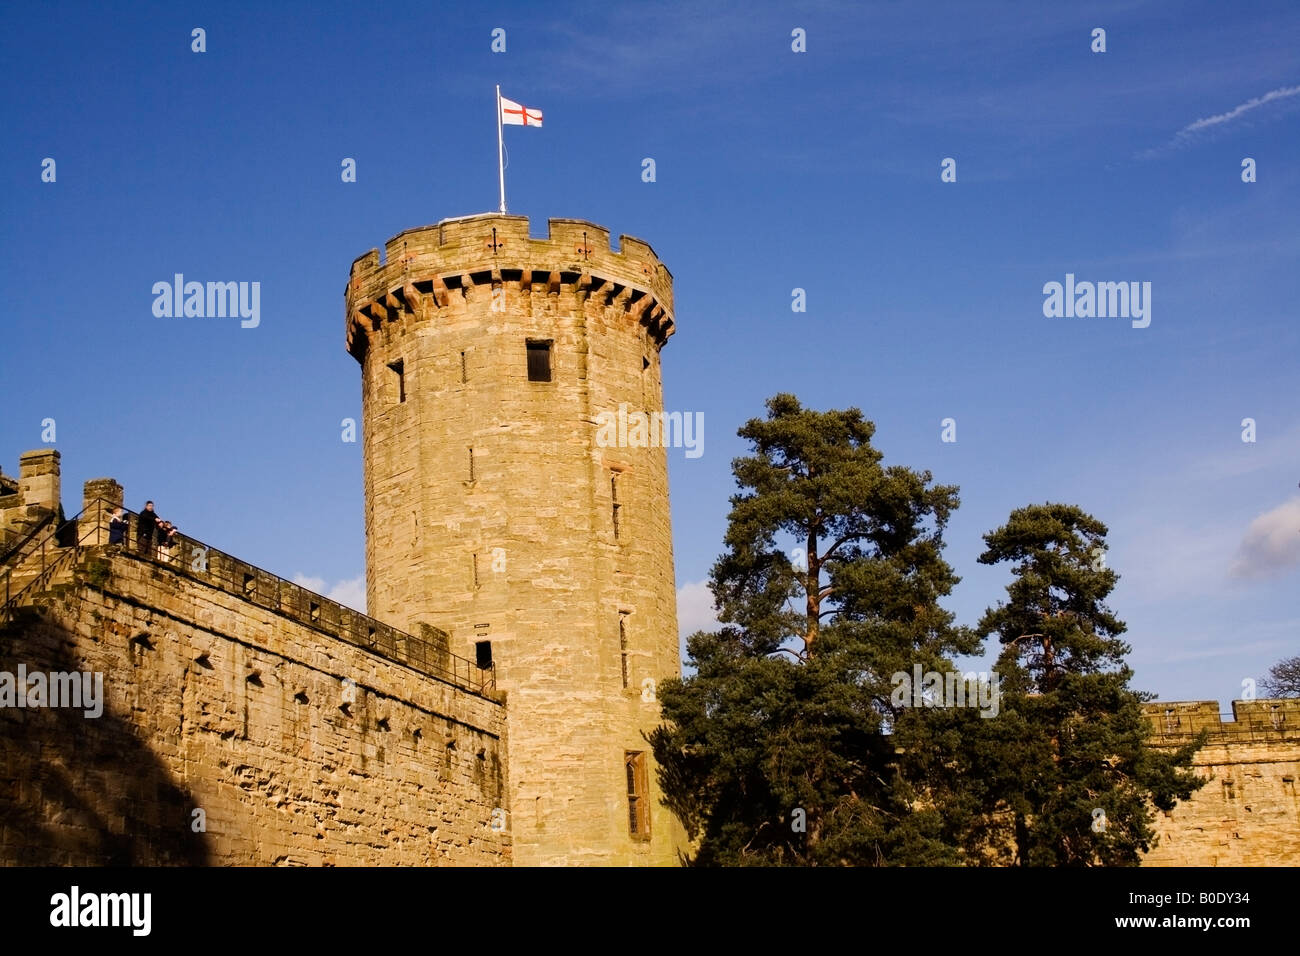 Remparts du château et de la tourelle avec saint george. La tour du drapeau est le pilier d'un système défensif du château Banque D'Images